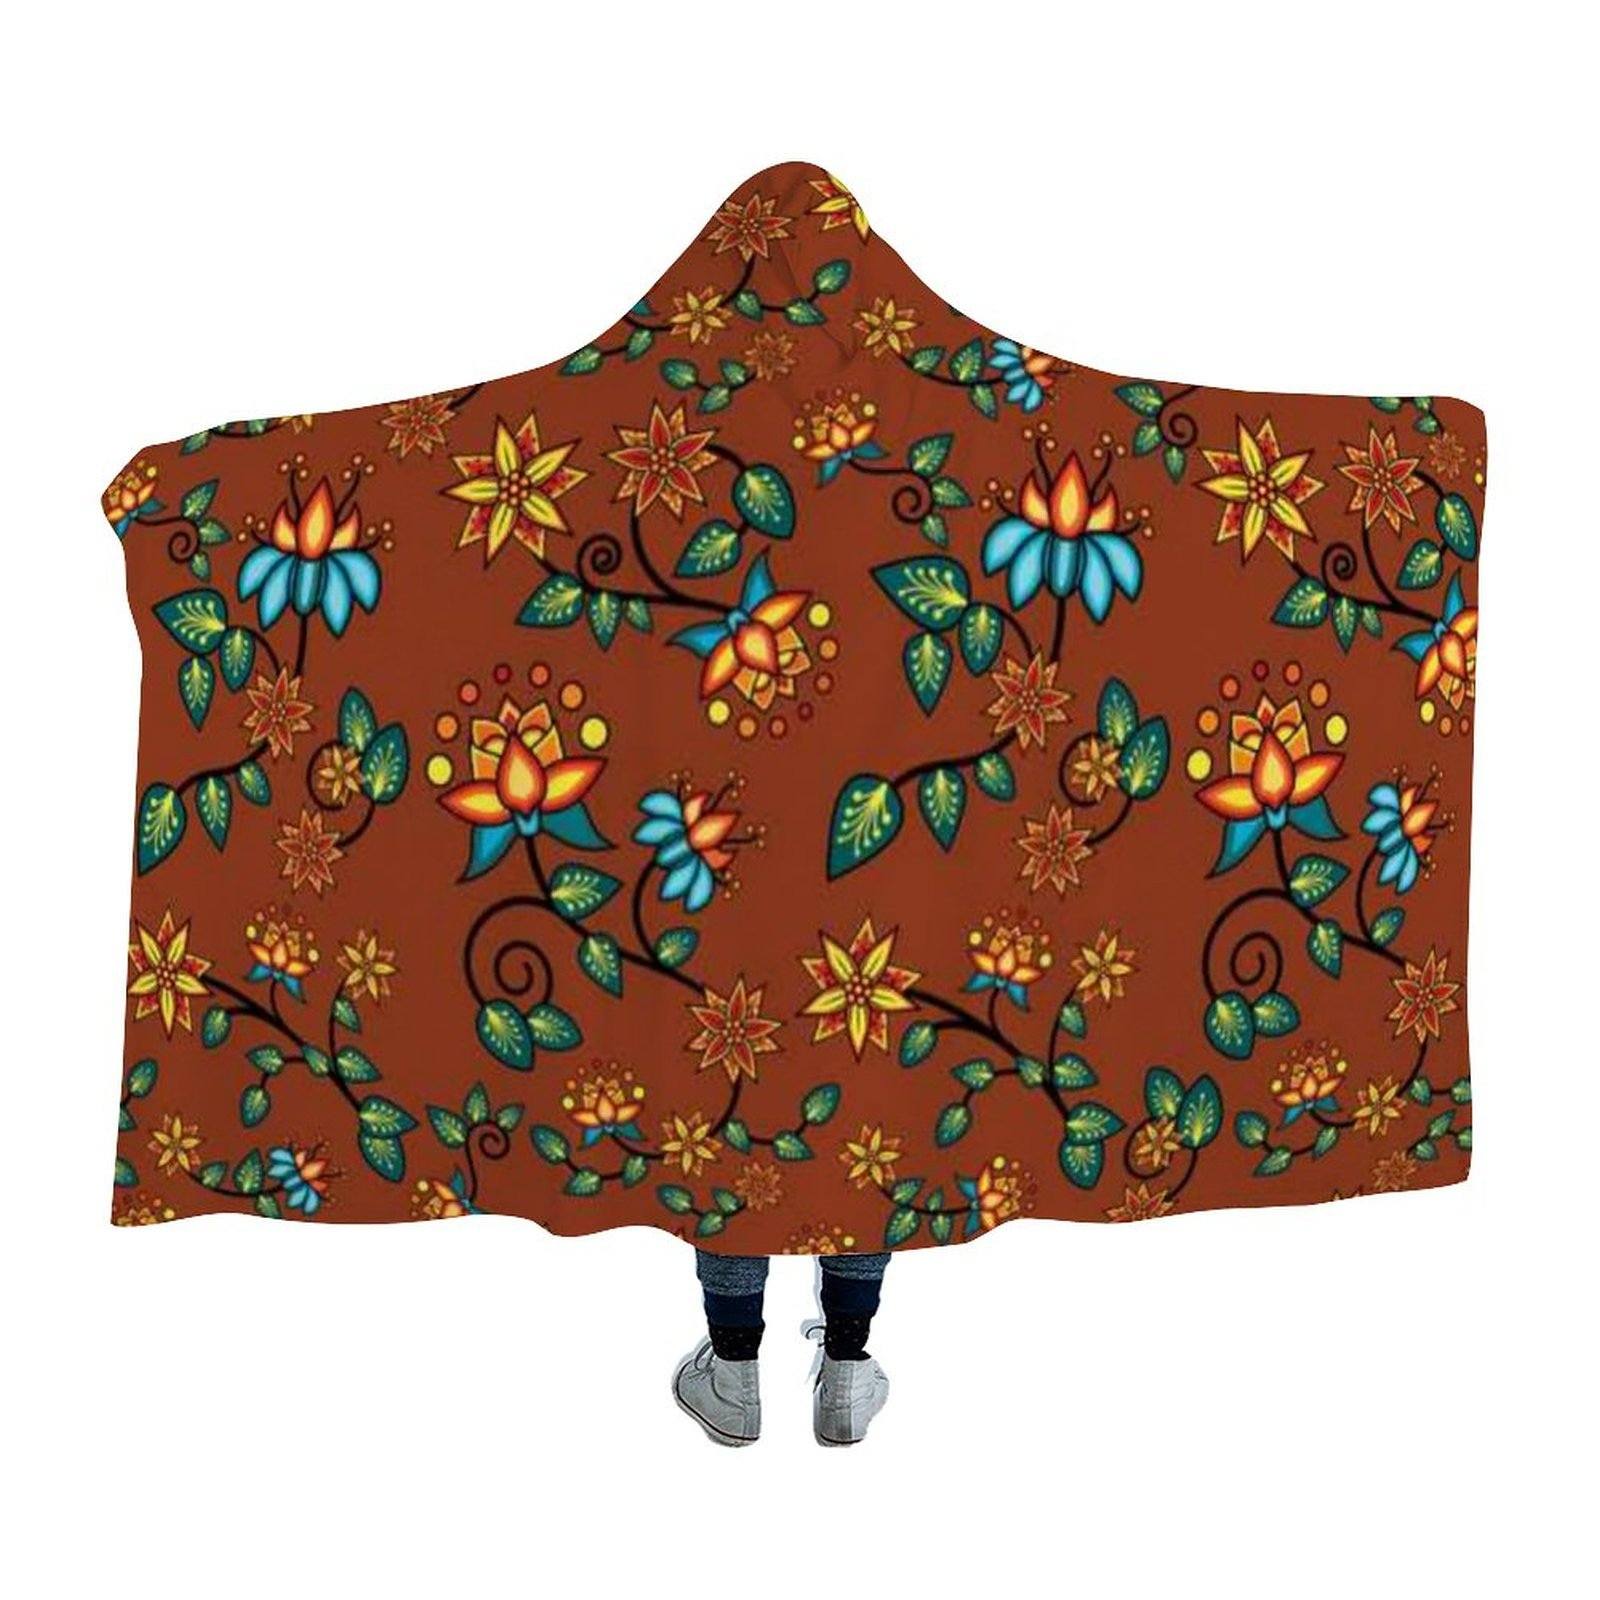 Lily Sierra Hooded Blanket blanket 49 Dzine 